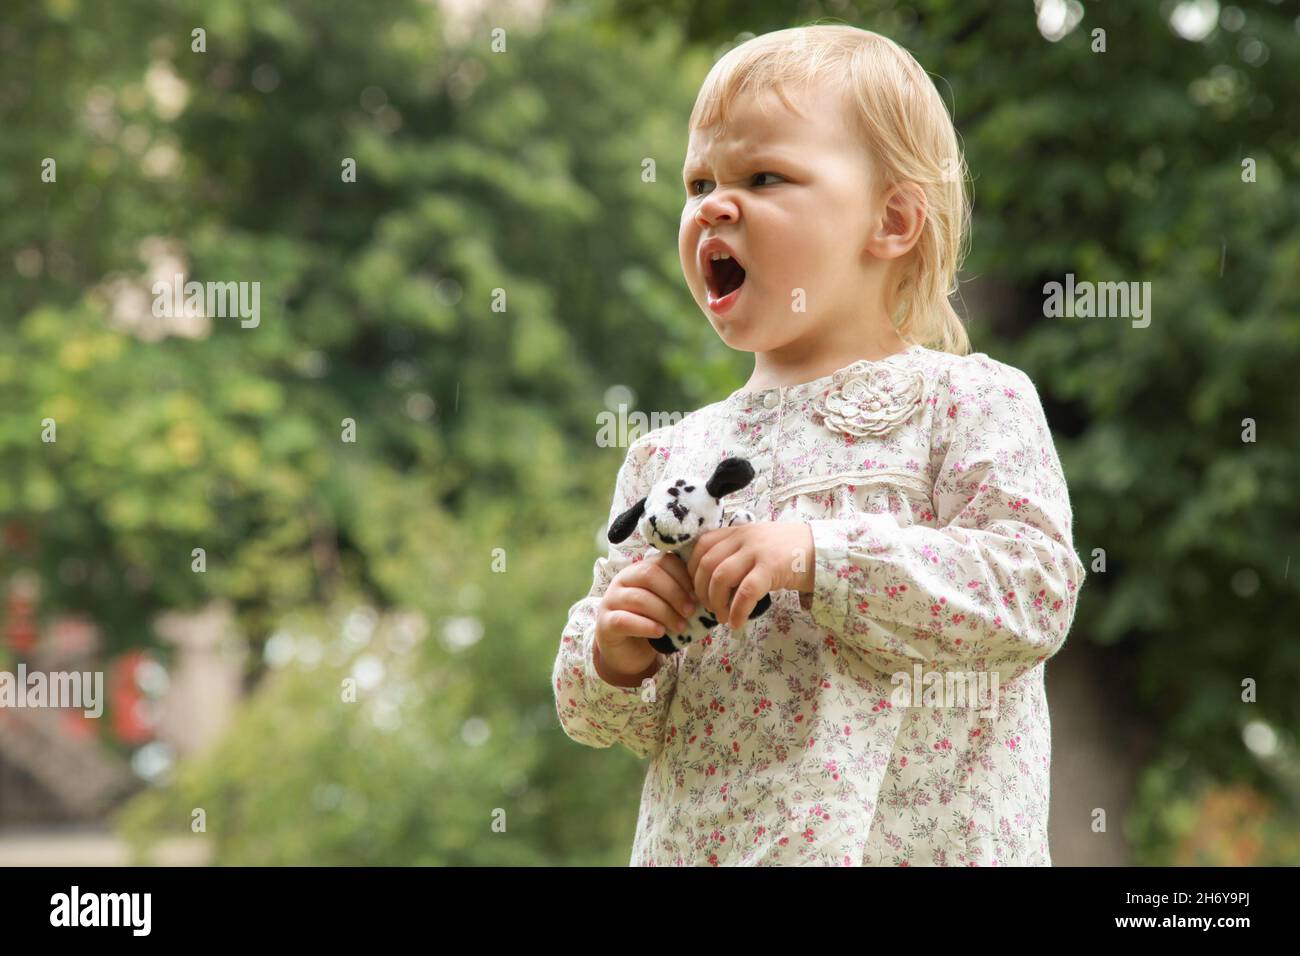 Une jeune fille blonde en colère avec un jouet dans les mains crie Banque D'Images